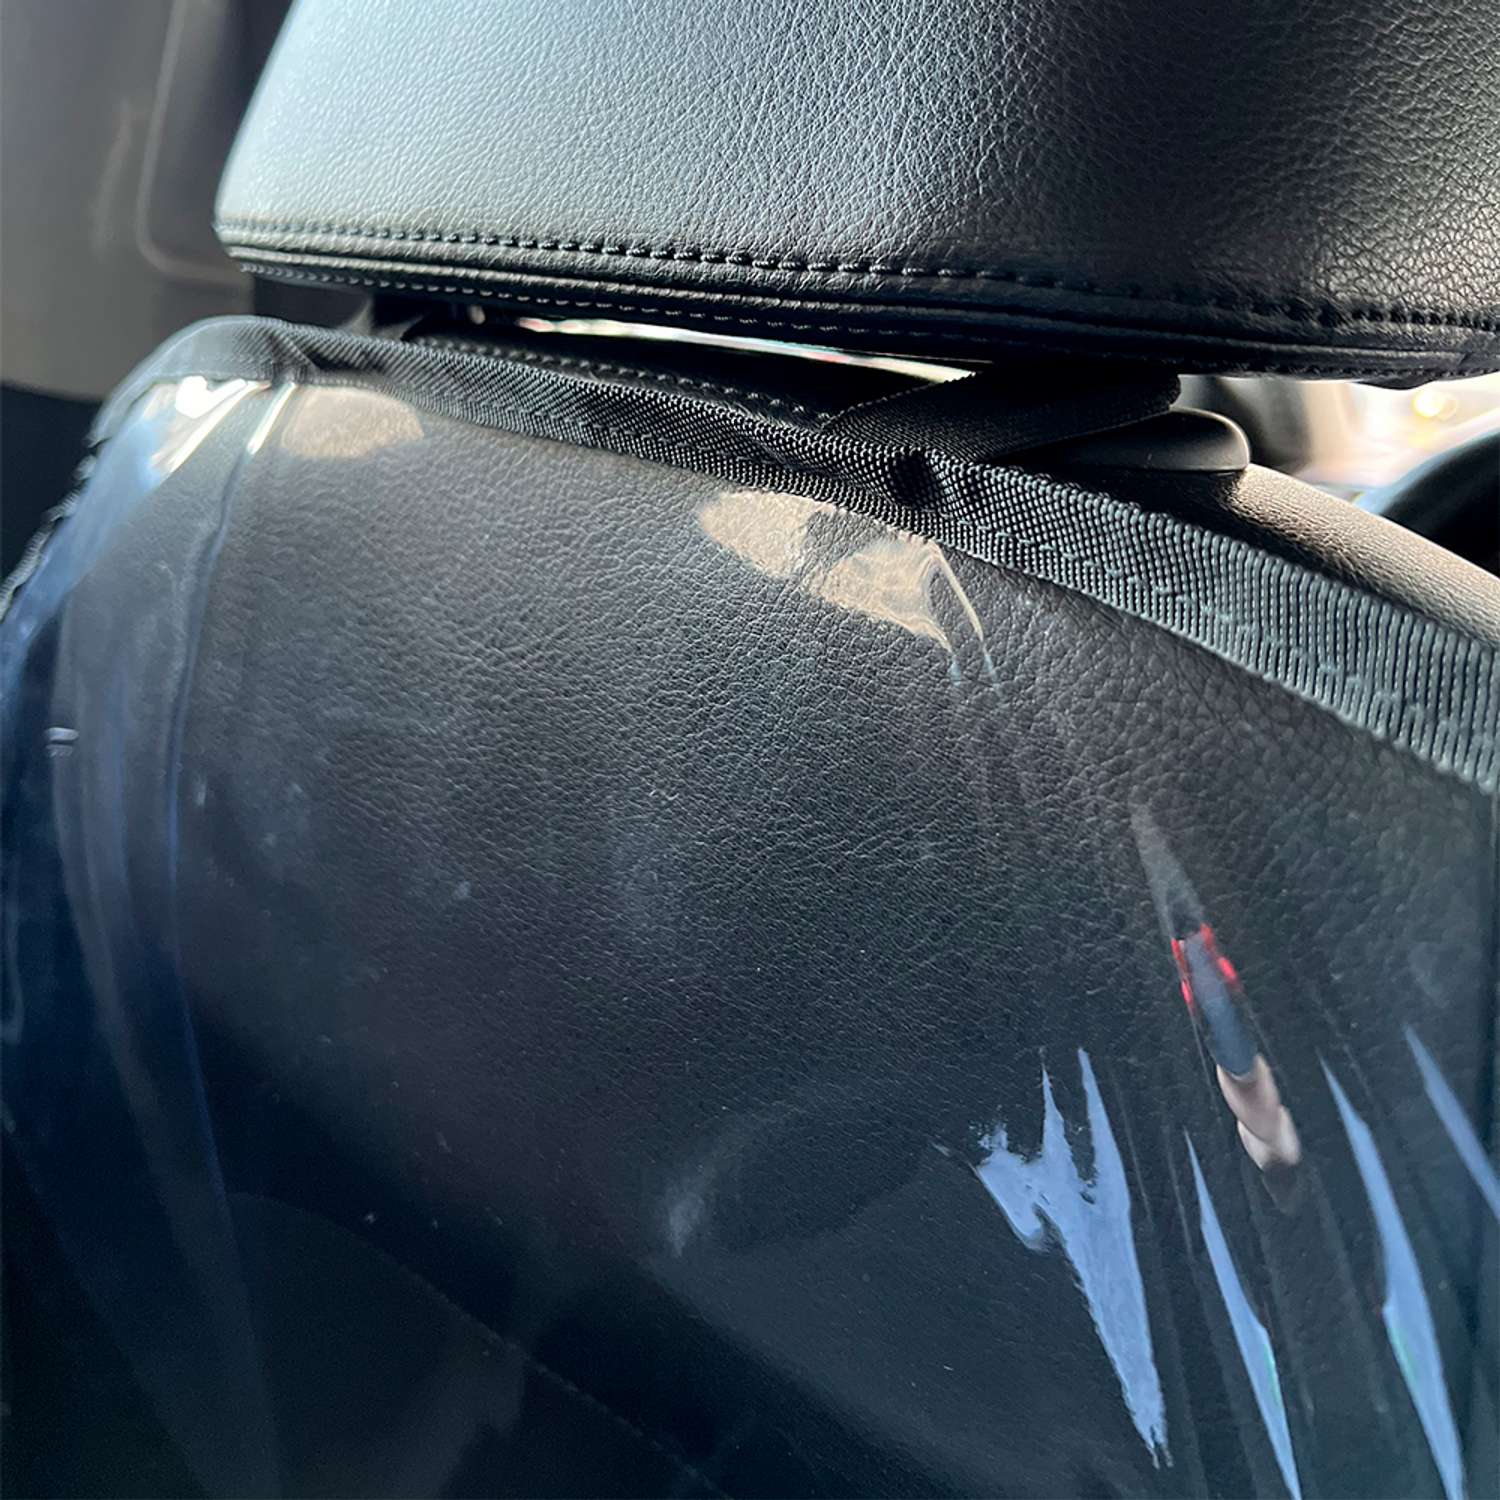 Защитная накидка Mobylos прозрачная защита от детских ног на спинку сиденья автомобиля - фото 8